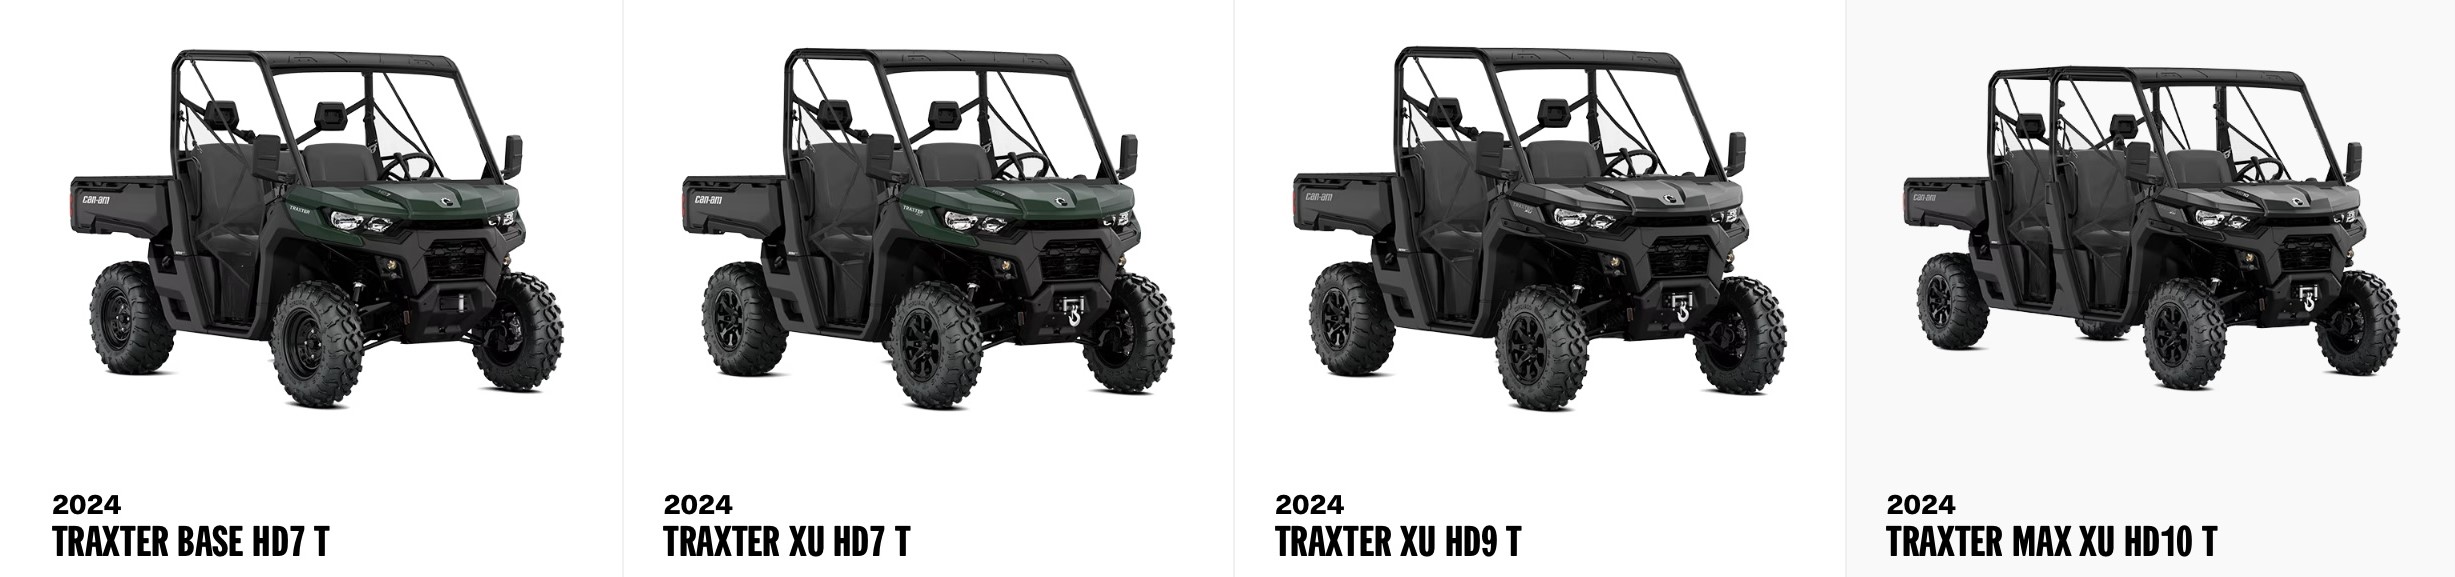 Angebot Canam Traxter XU Traxter HD 10 2024 Bei Vertragshändler Weinand Kolker Ochtendung - Traxter Lineup 2024 -